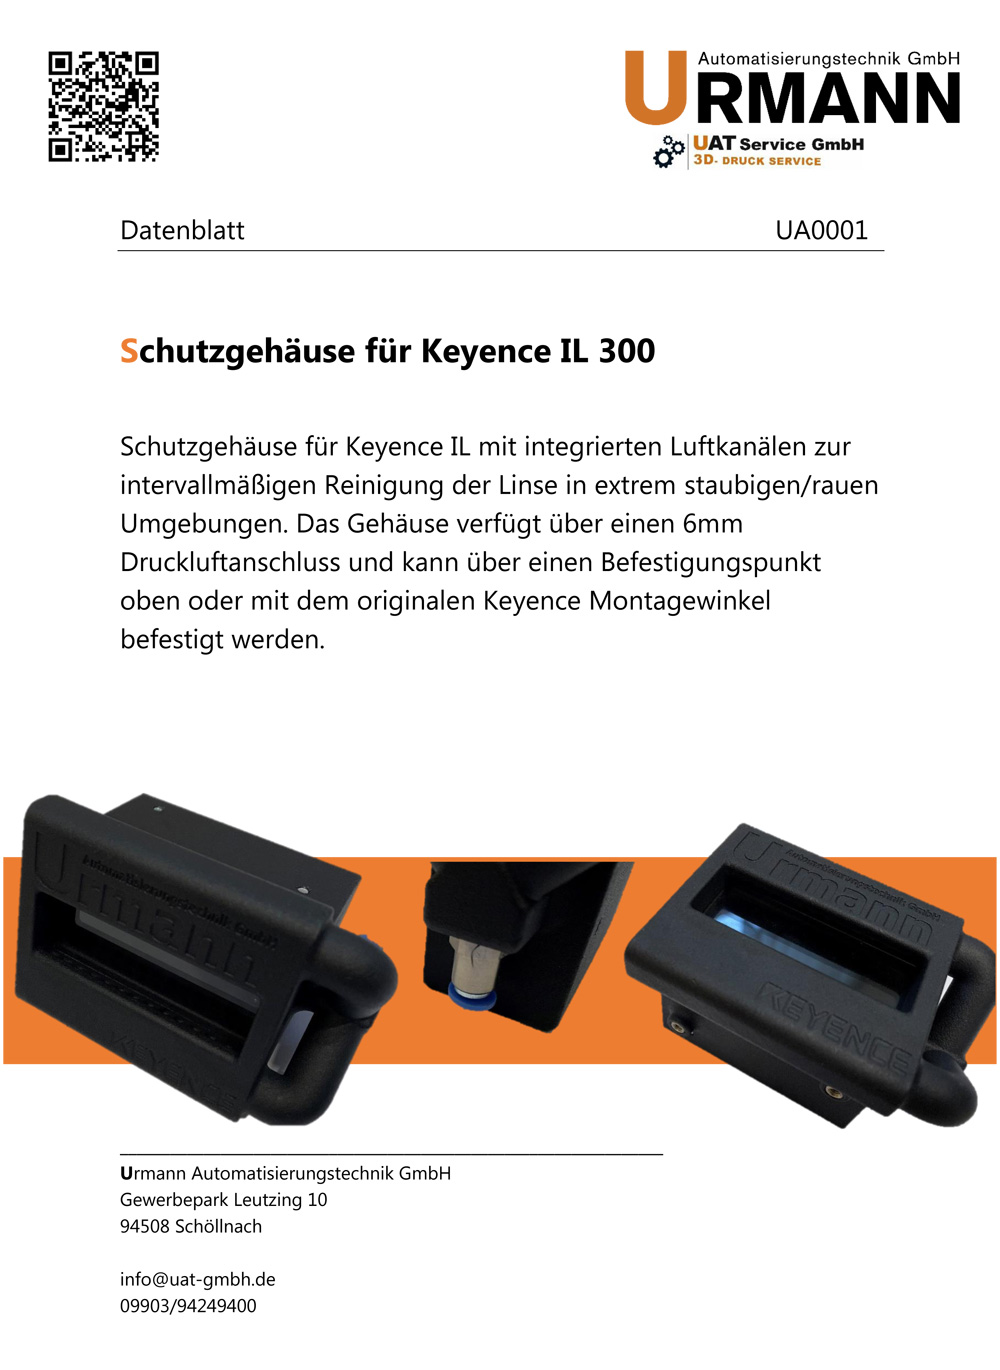 Schutzgehäuse für Keyence IL 300 Urmann Automatisierungstechnik GmbH